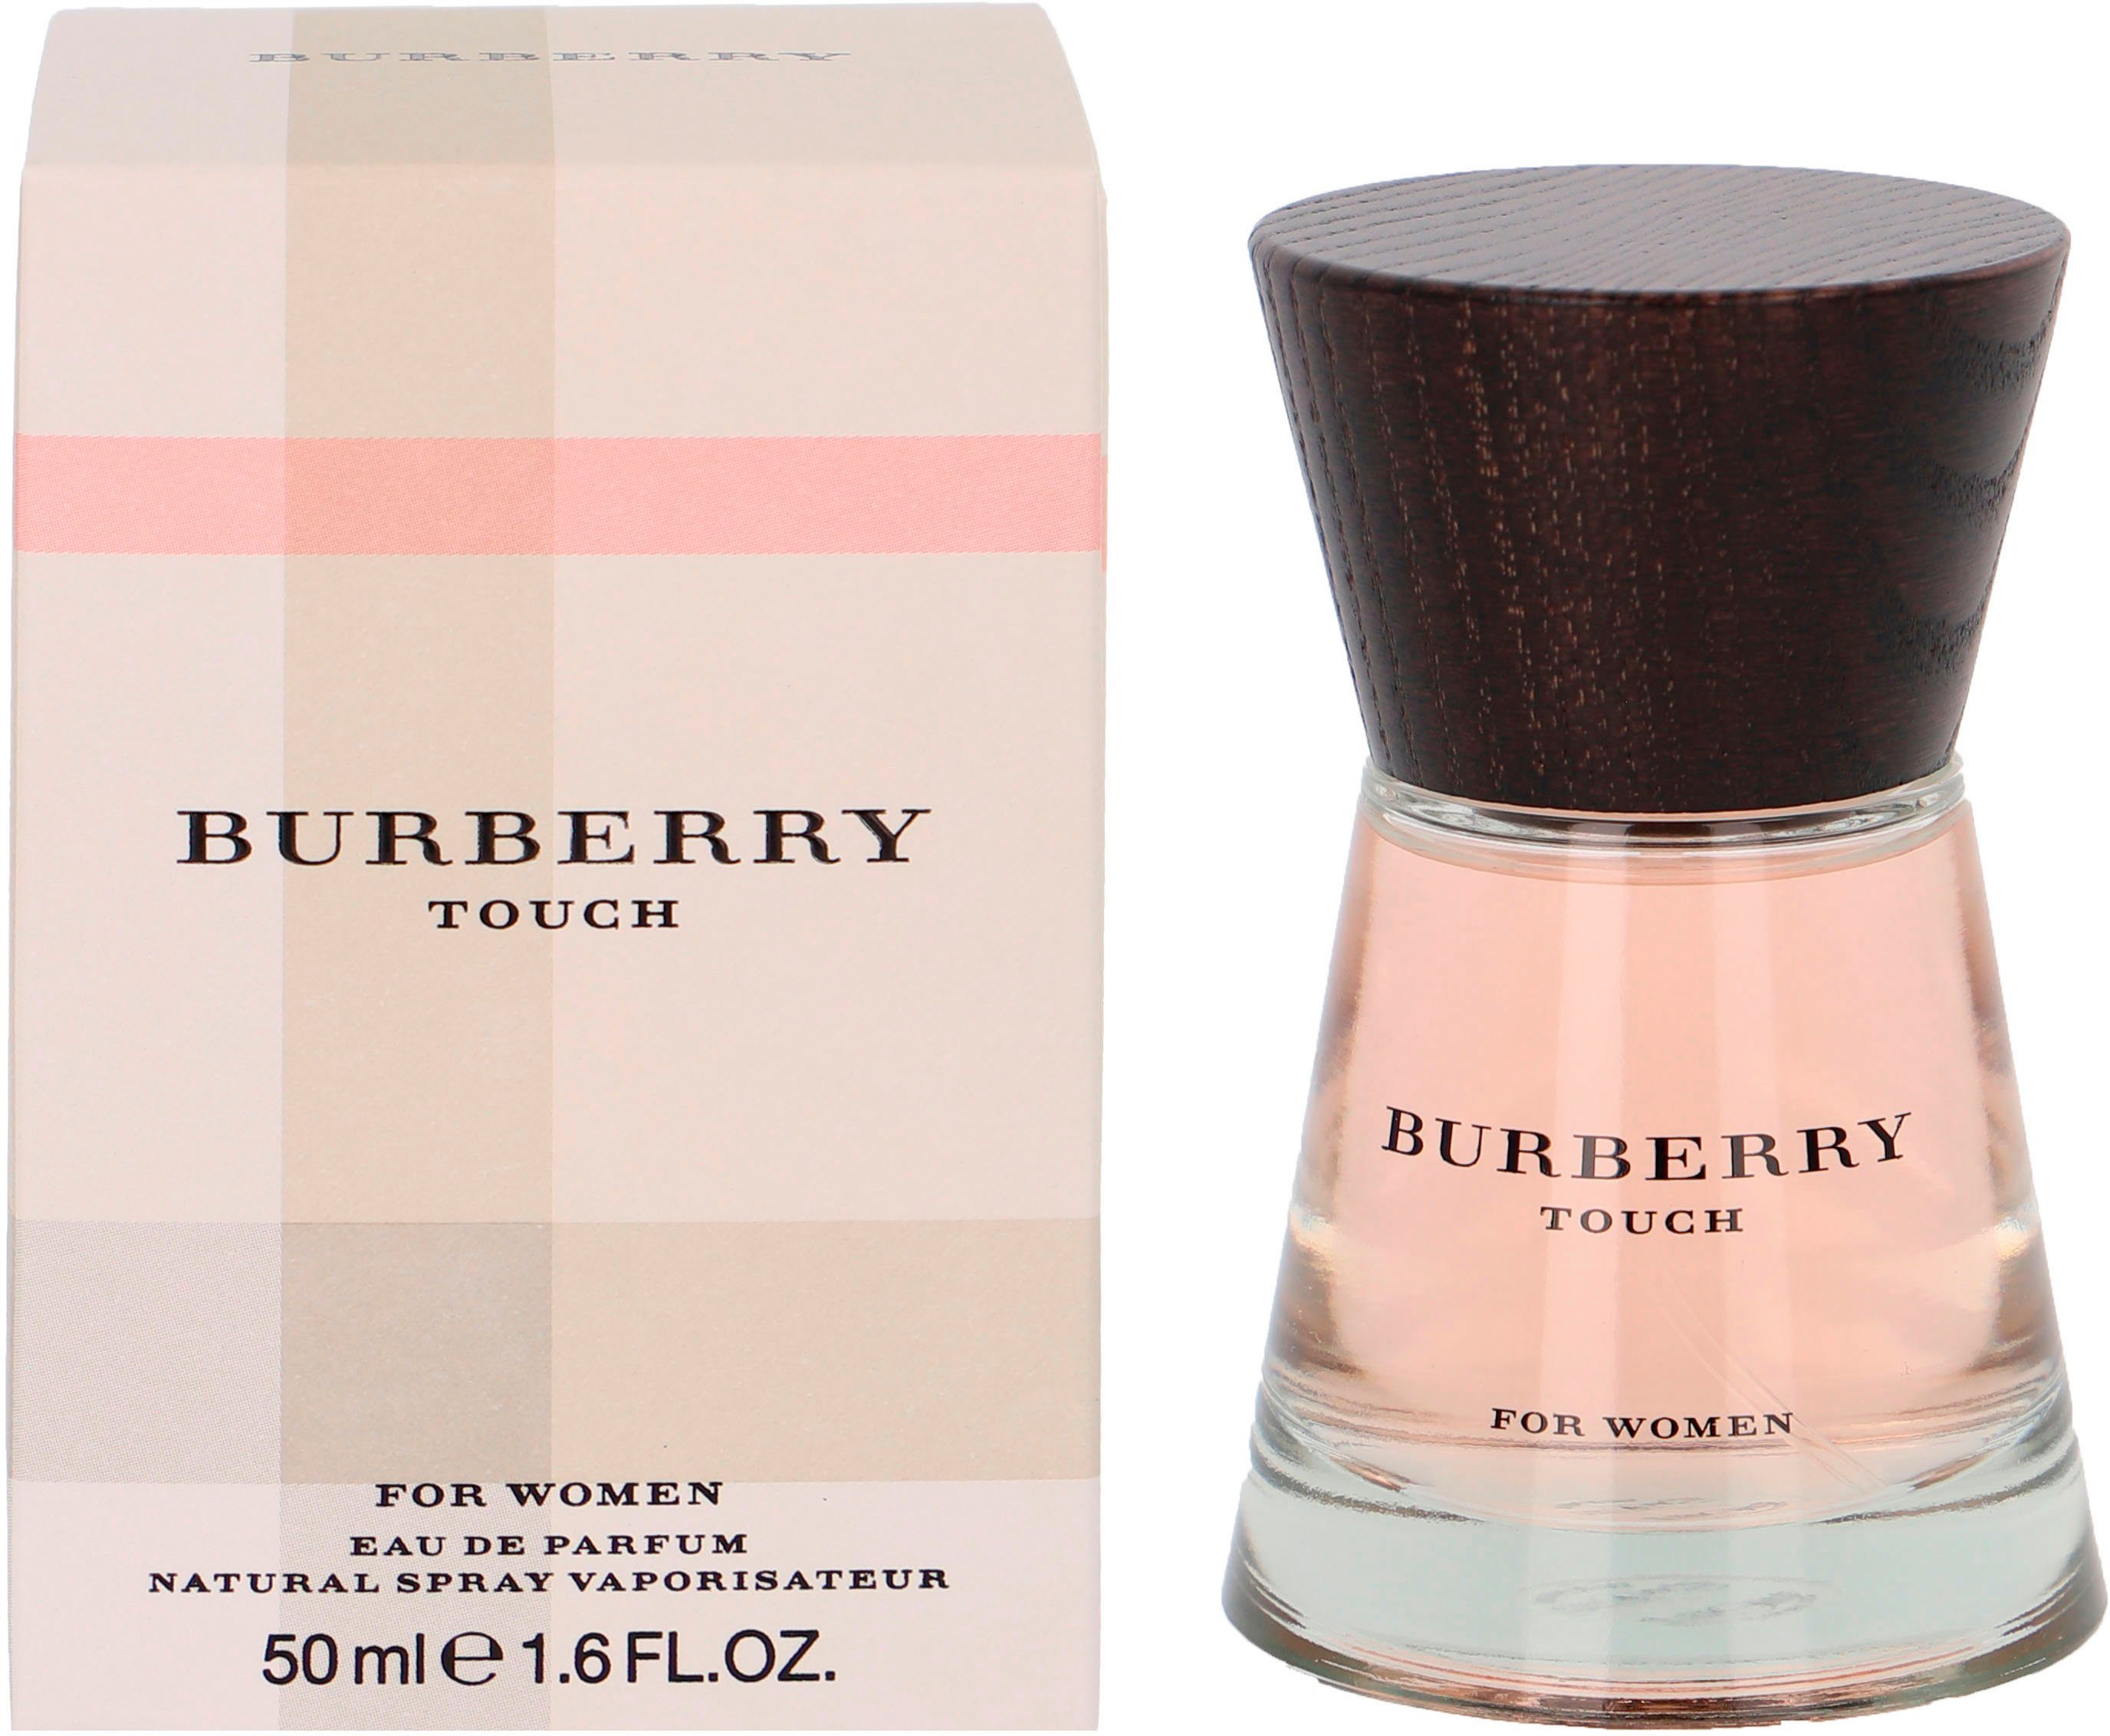 BURBERRY Eau de Parfum Touch for Women online kaufen | OTTO